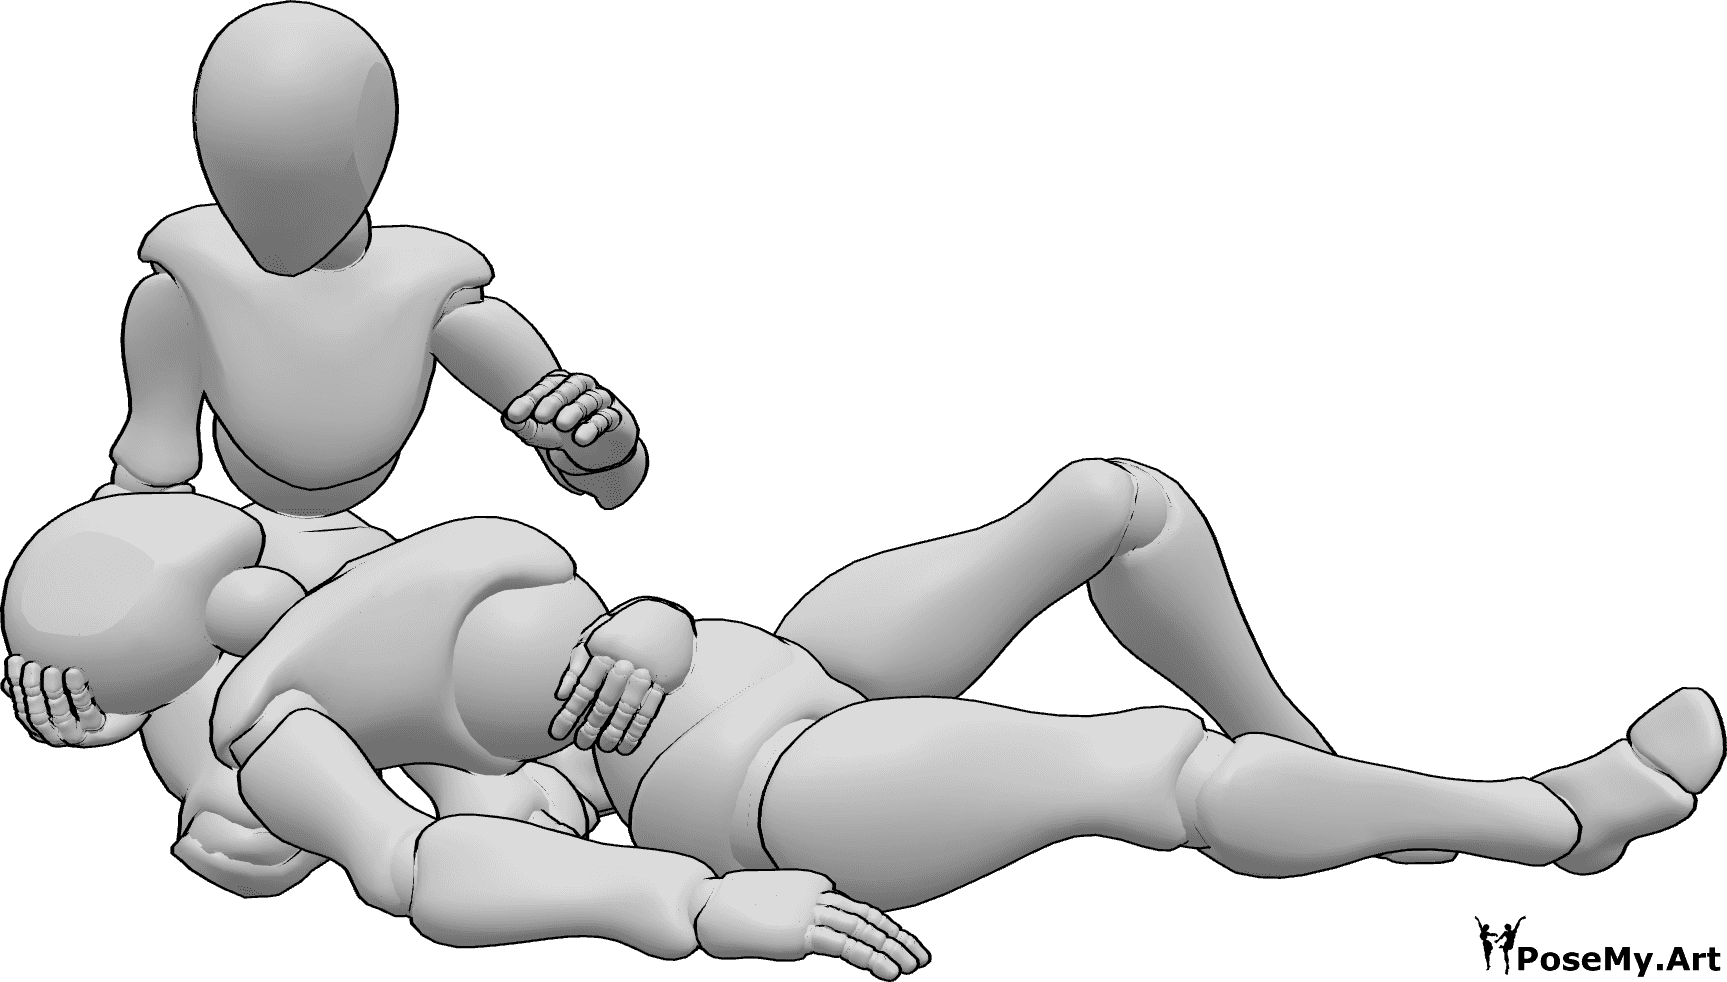 Riferimento alle pose- Donna ferita in posizione distesa - La femmina ferita è sdraiata sulle ginocchia dell'altra femmina e si tiene la pancia.